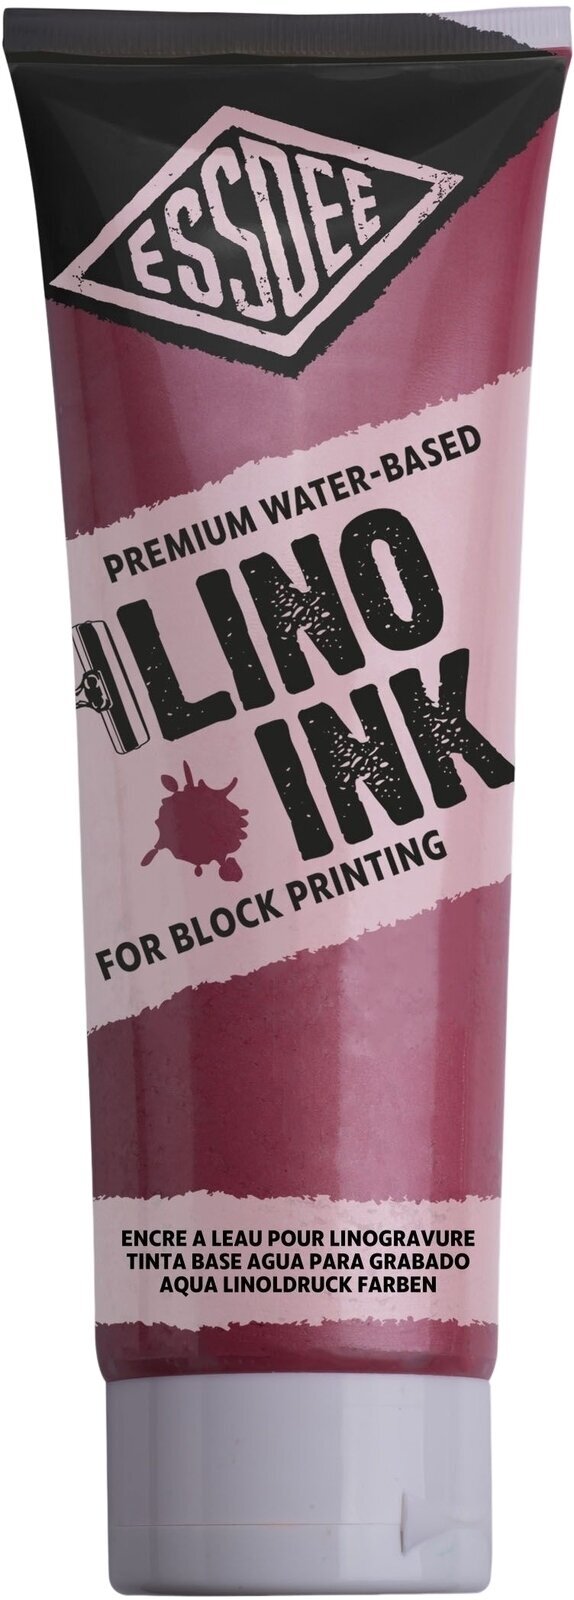 Peintures pour la linogravure Essdee Block Printing Ink Peintures pour la linogravure Pearlescent Red 300 ml